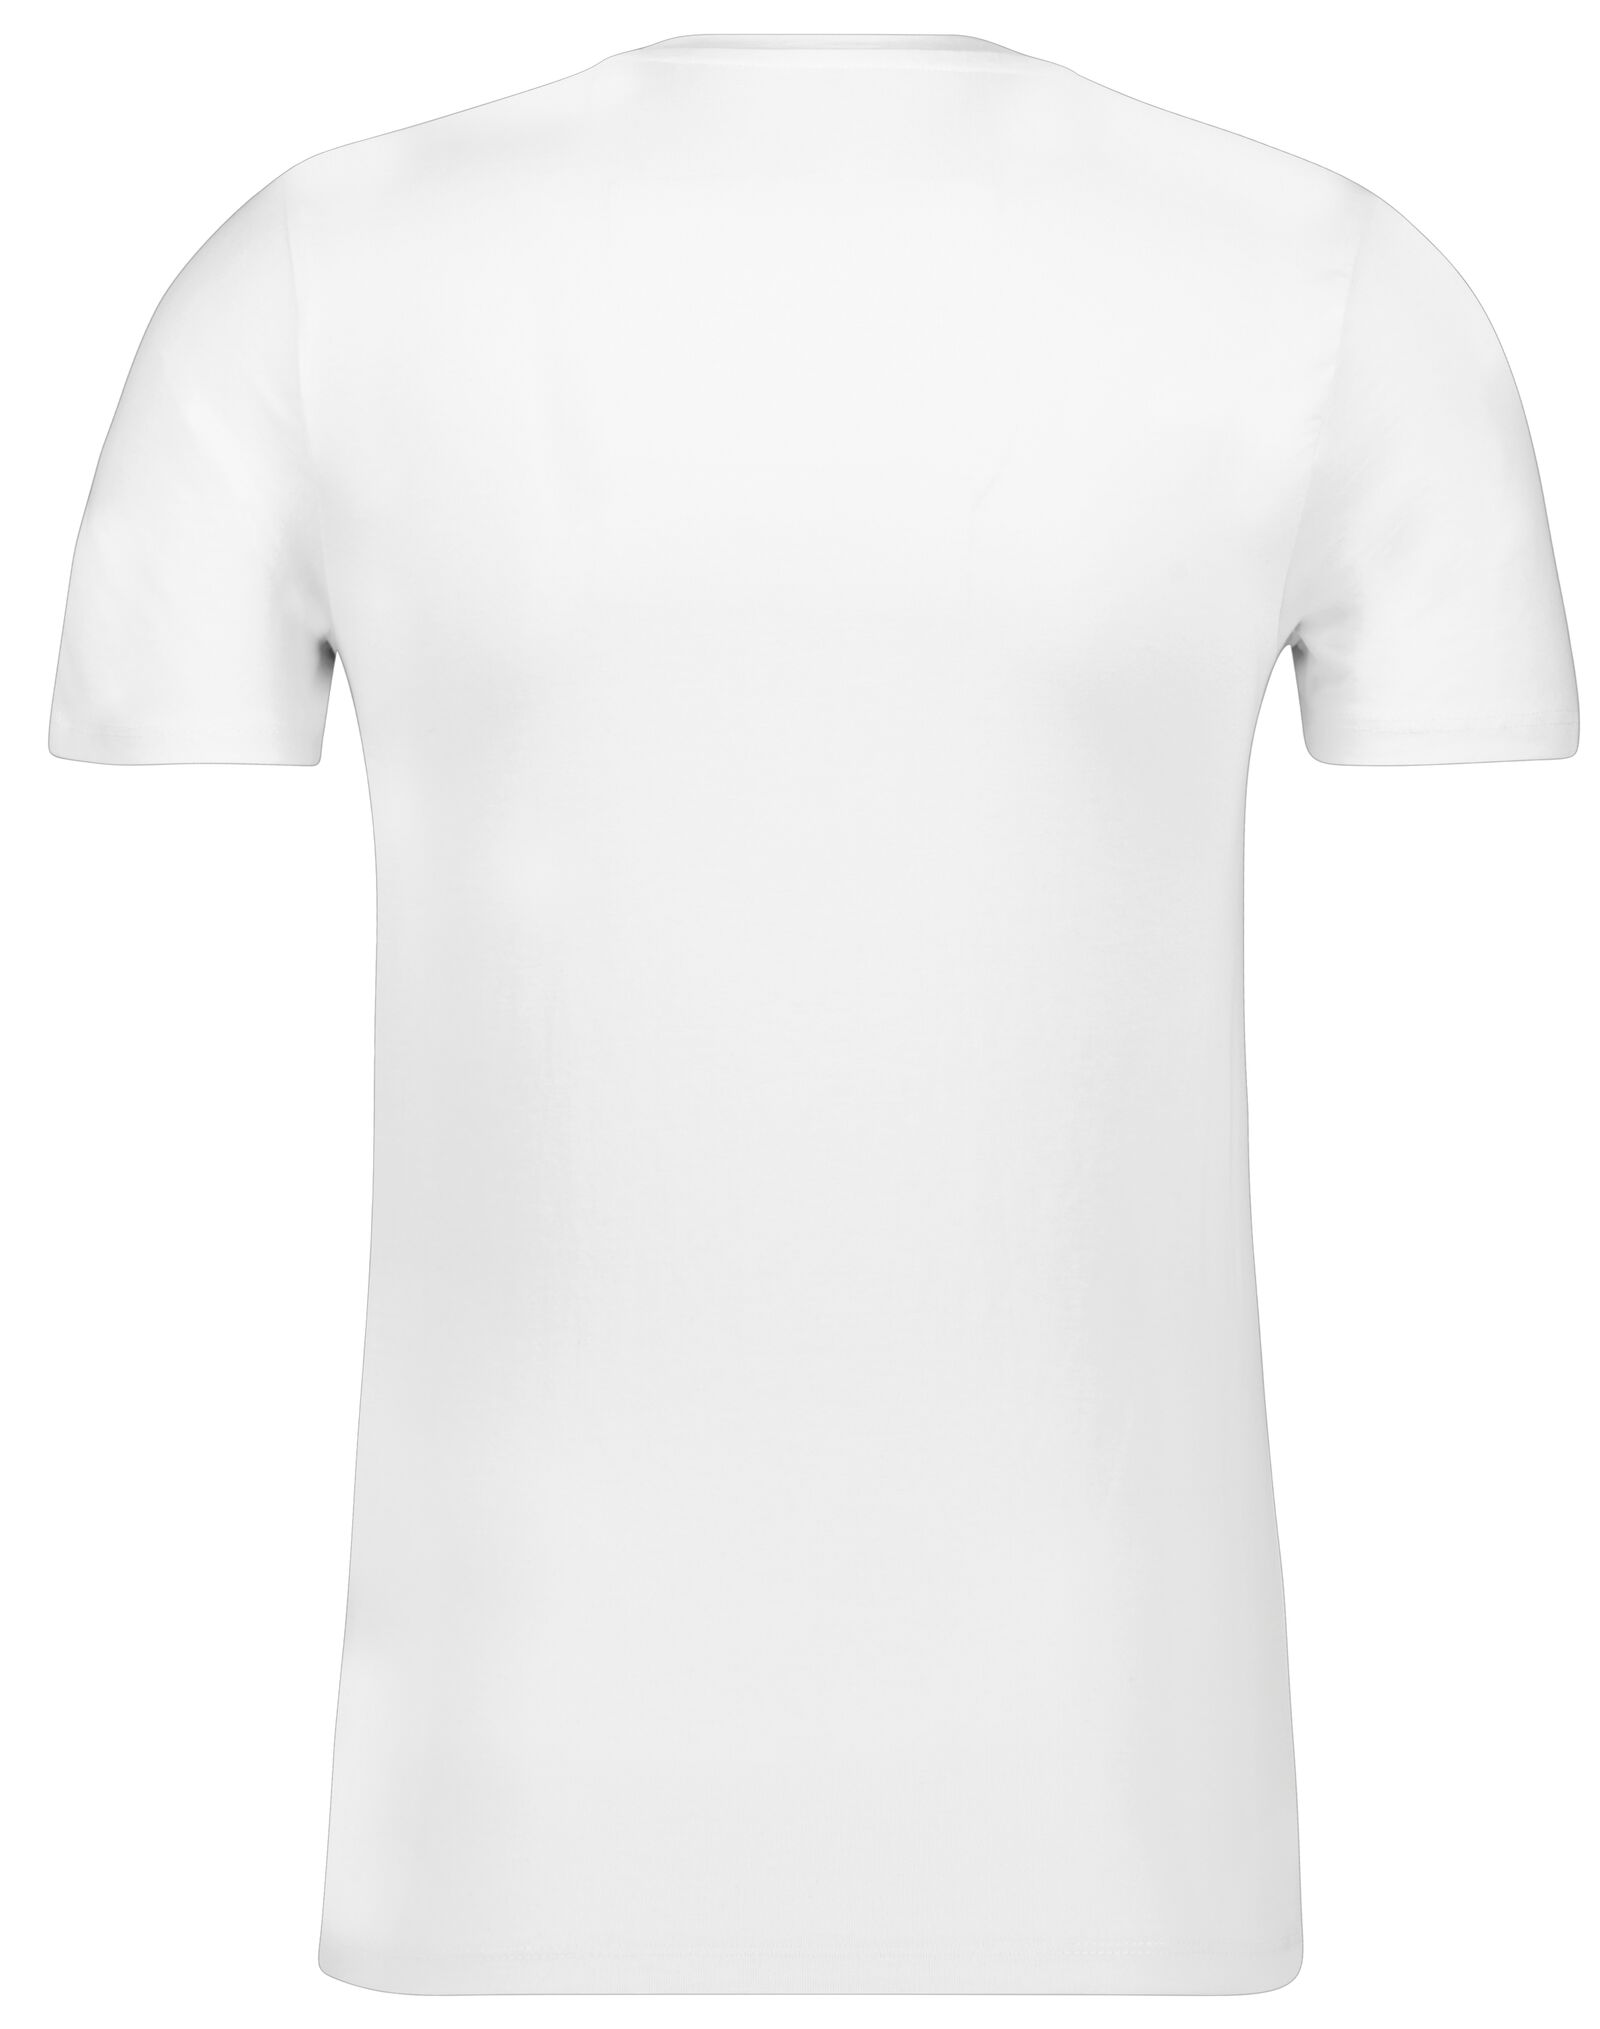 Herren-T-Shirt, Slim Fit, Rundhalsausschnitt, Bambus weiß weiß - 1000010179 - HEMA